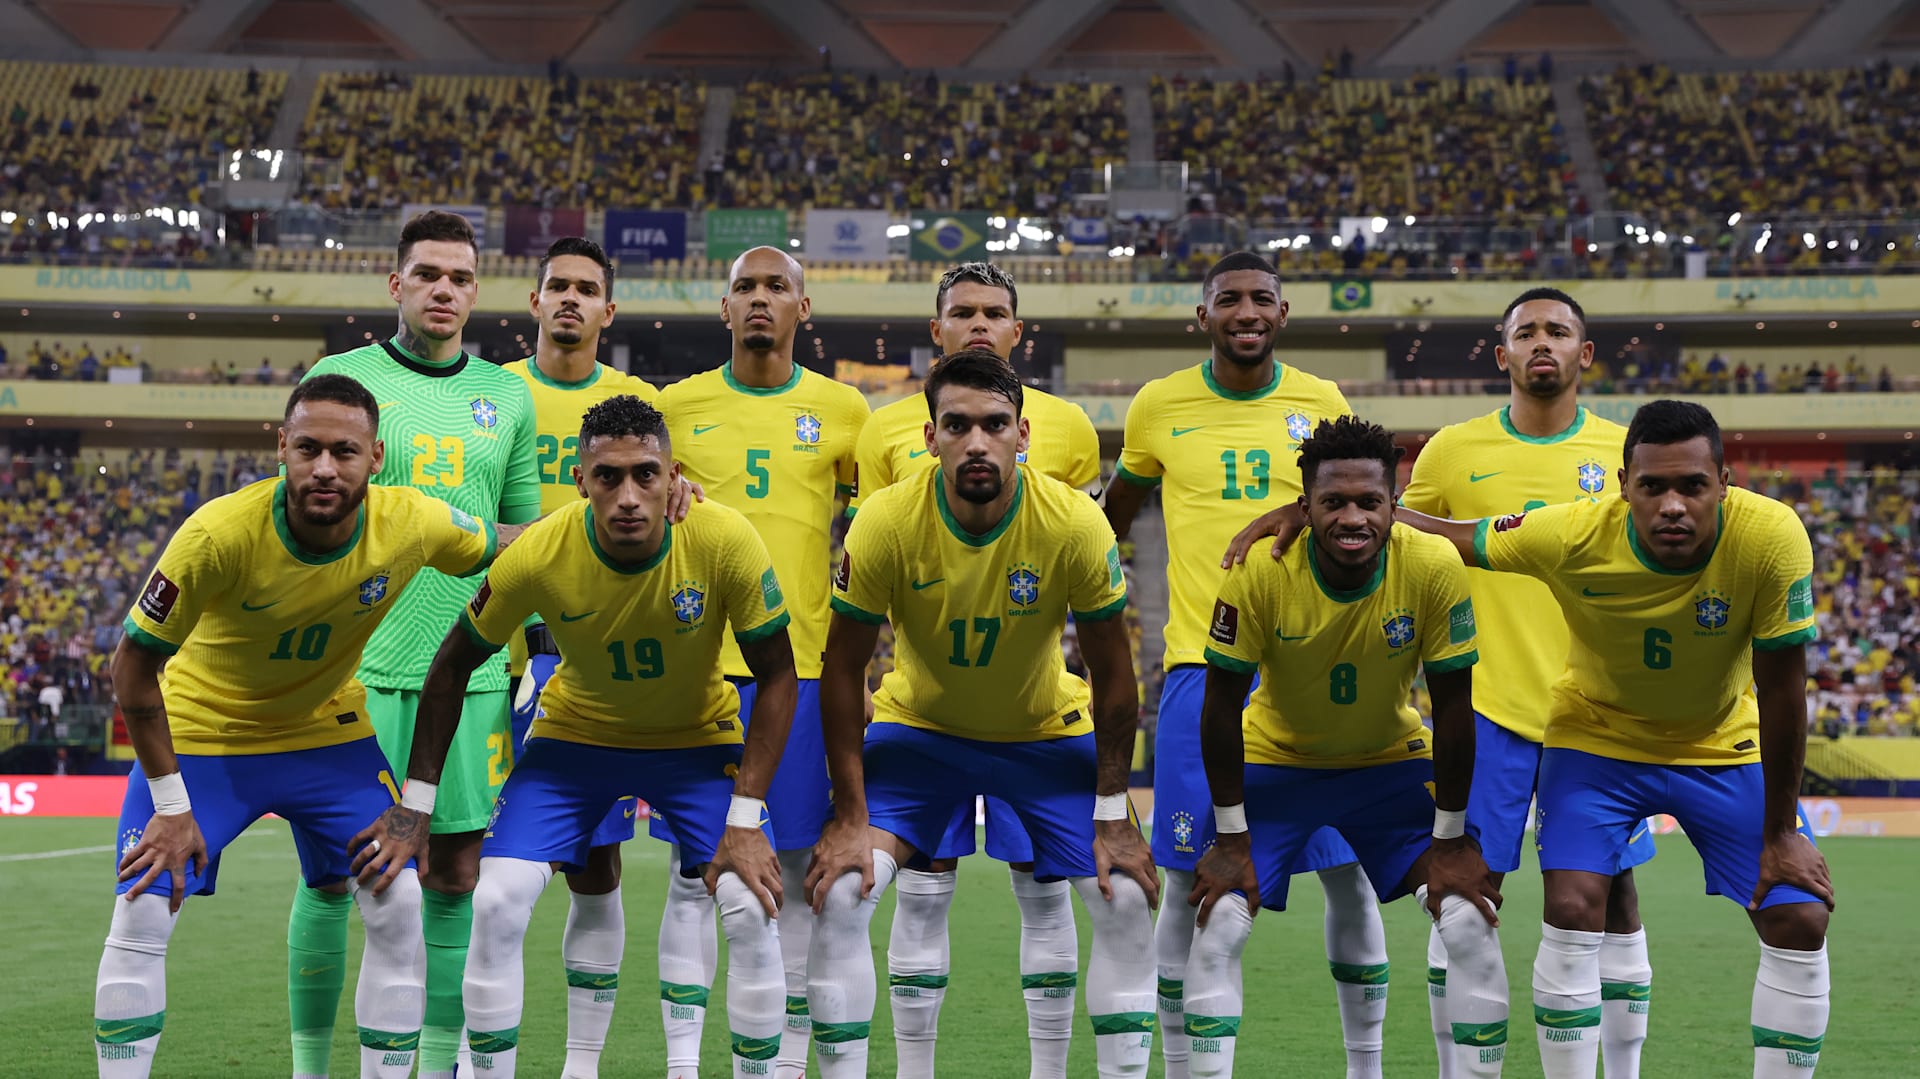 Copa do Mundo 2022: Veja datas, horários e adversários dos jogos do Brasil